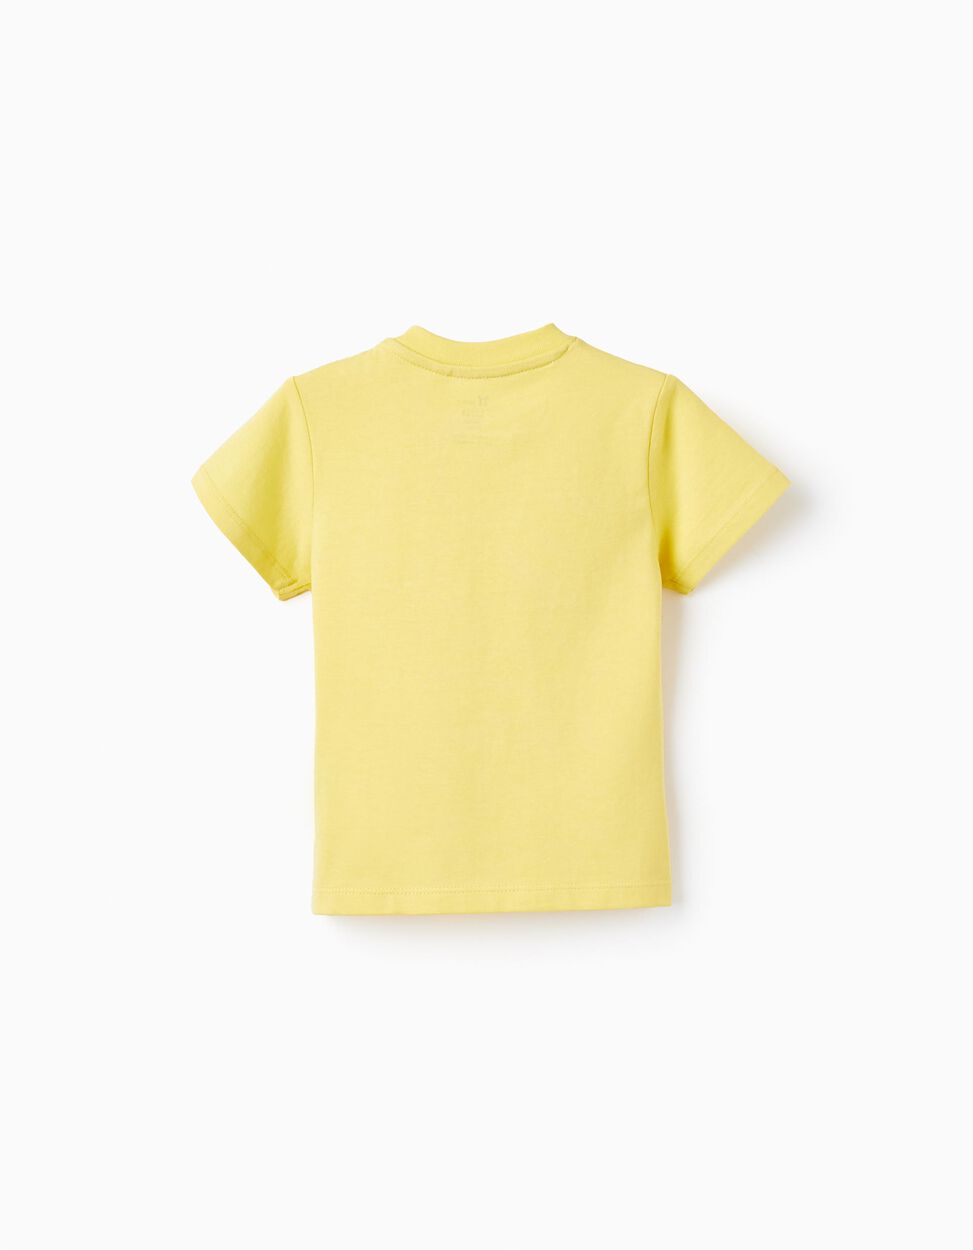 Comprar Online T-shirt de Algodão com Estampado para Bebé Menino 'Dress- Up', Amarelo